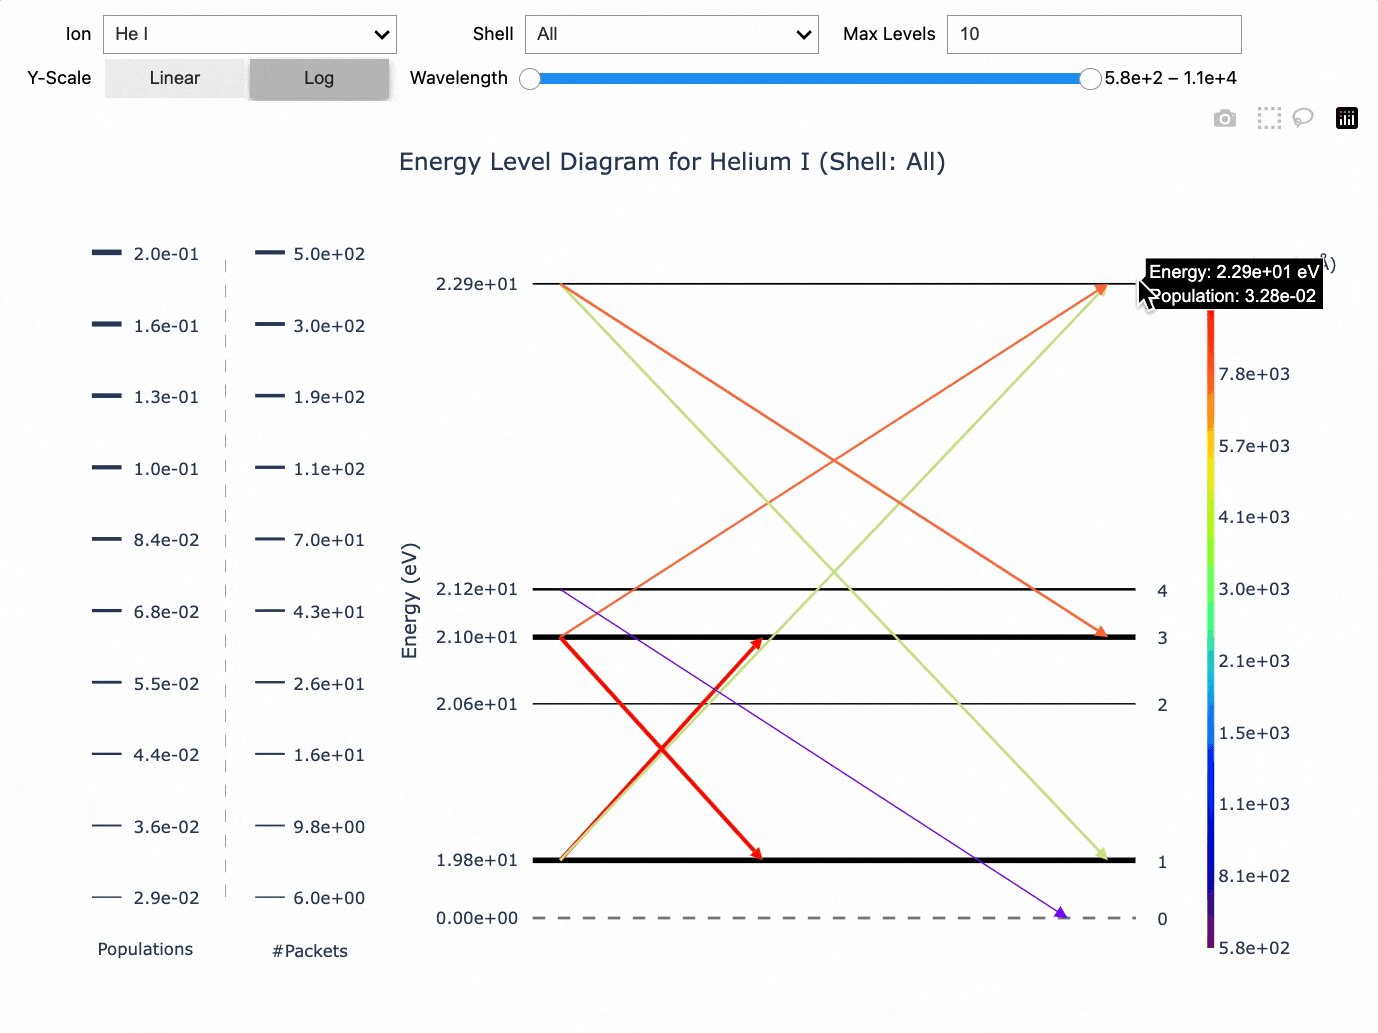 Demo of Energy Level Diagram